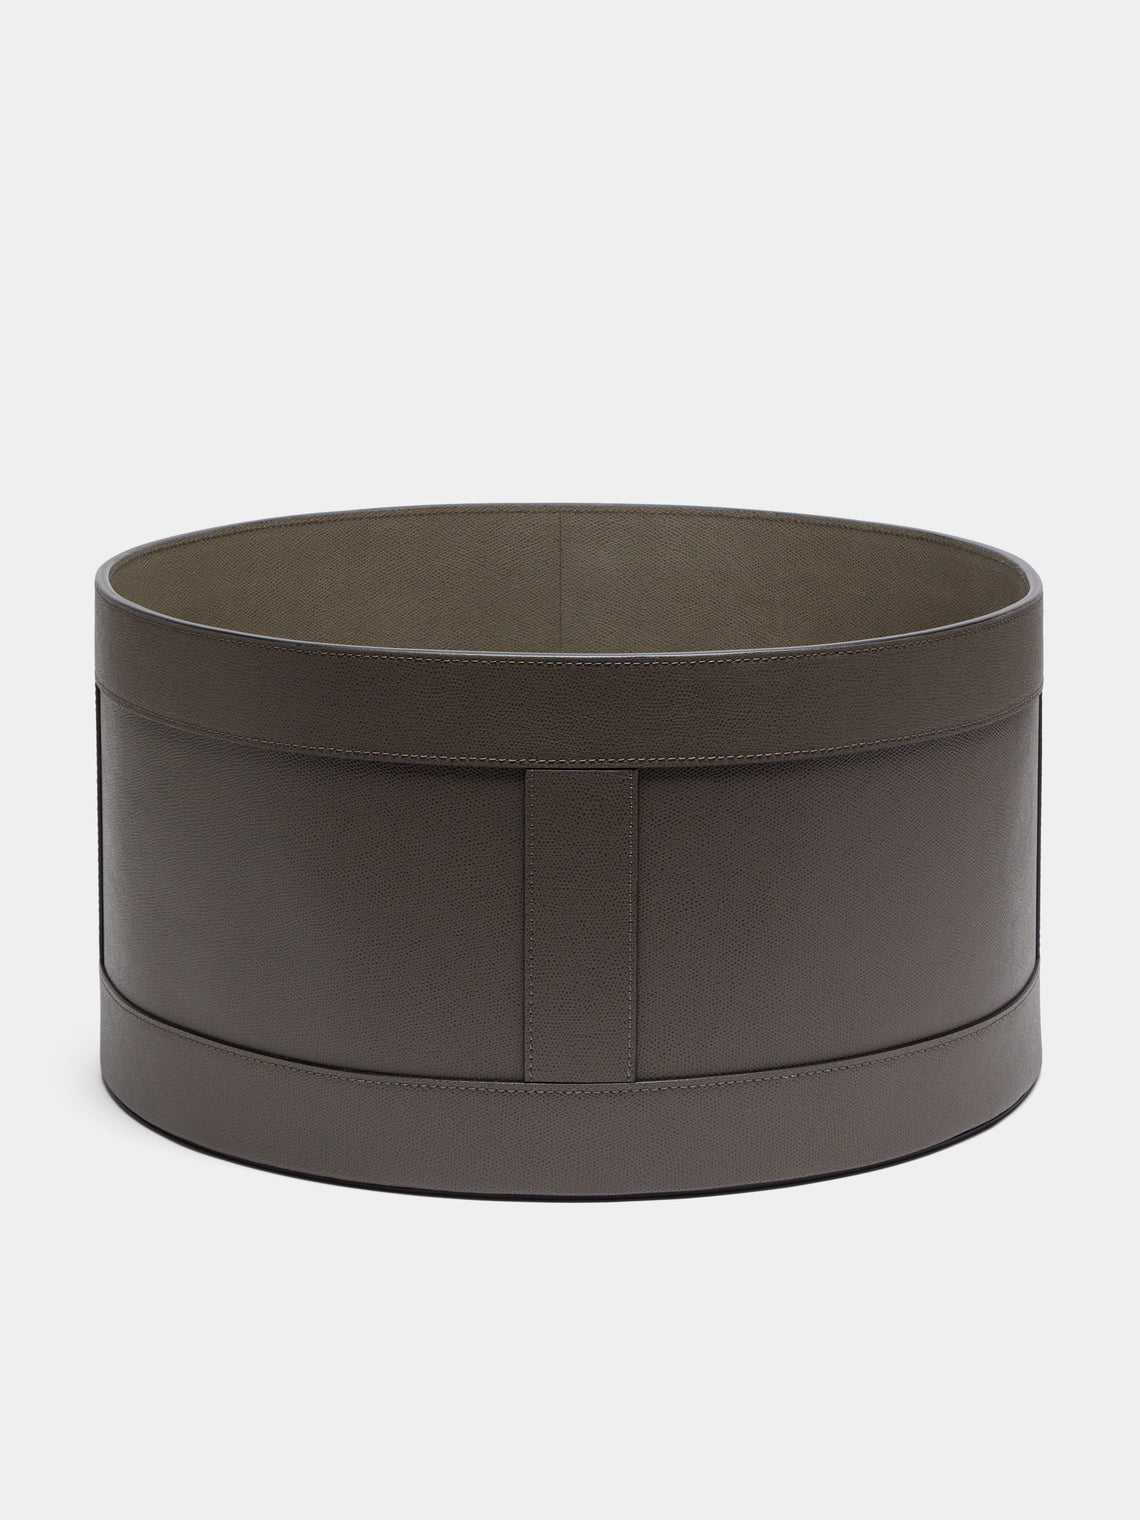 Giobagnara - Circular Leather Storage Basket - Taupe - ABASK - 